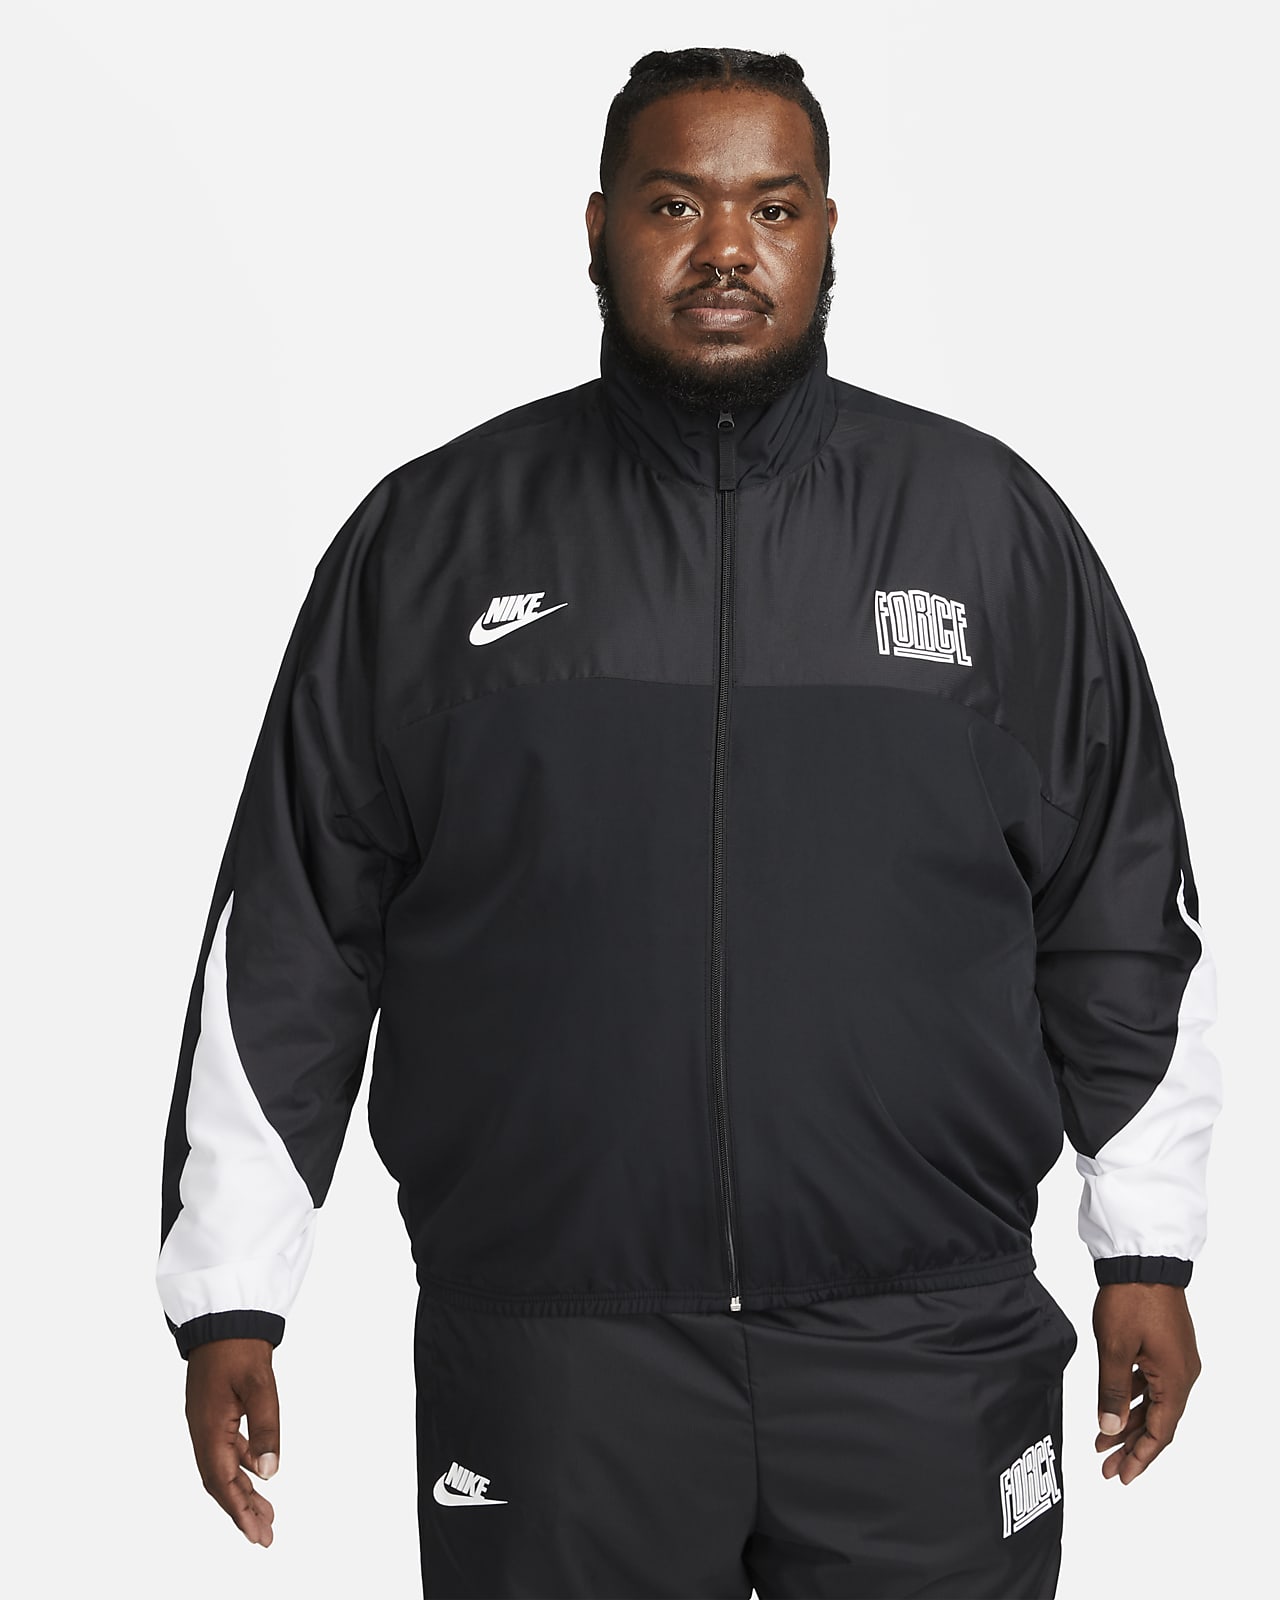 Nike Starting 5 Men's Basketball Jacket